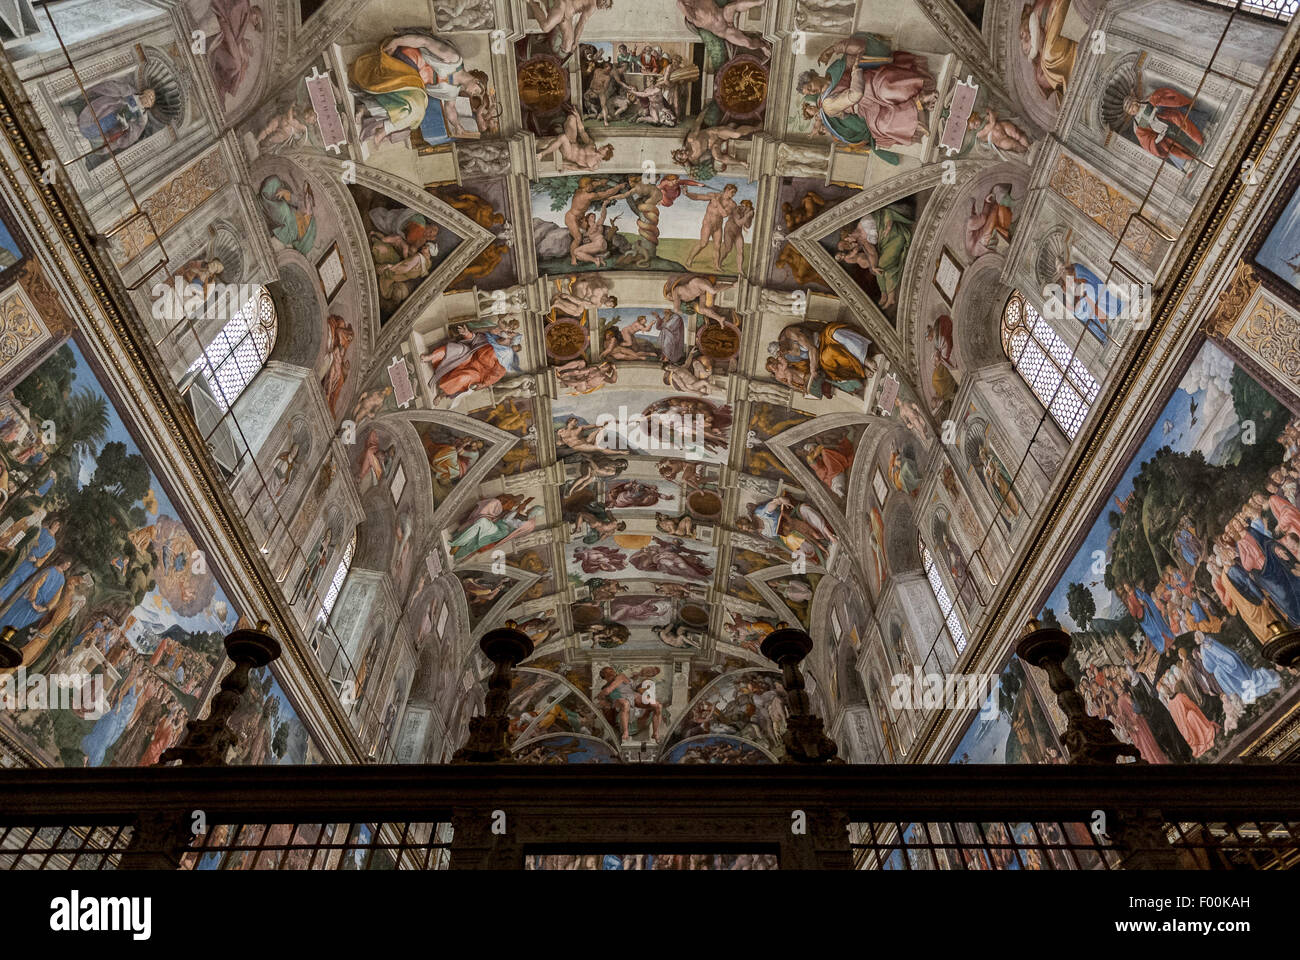 Decke der Sixtinischen Kapelle von Michelangelo gemalt. Vatikanische Museen, Vatikanstadt, Rom Italien Stockfoto